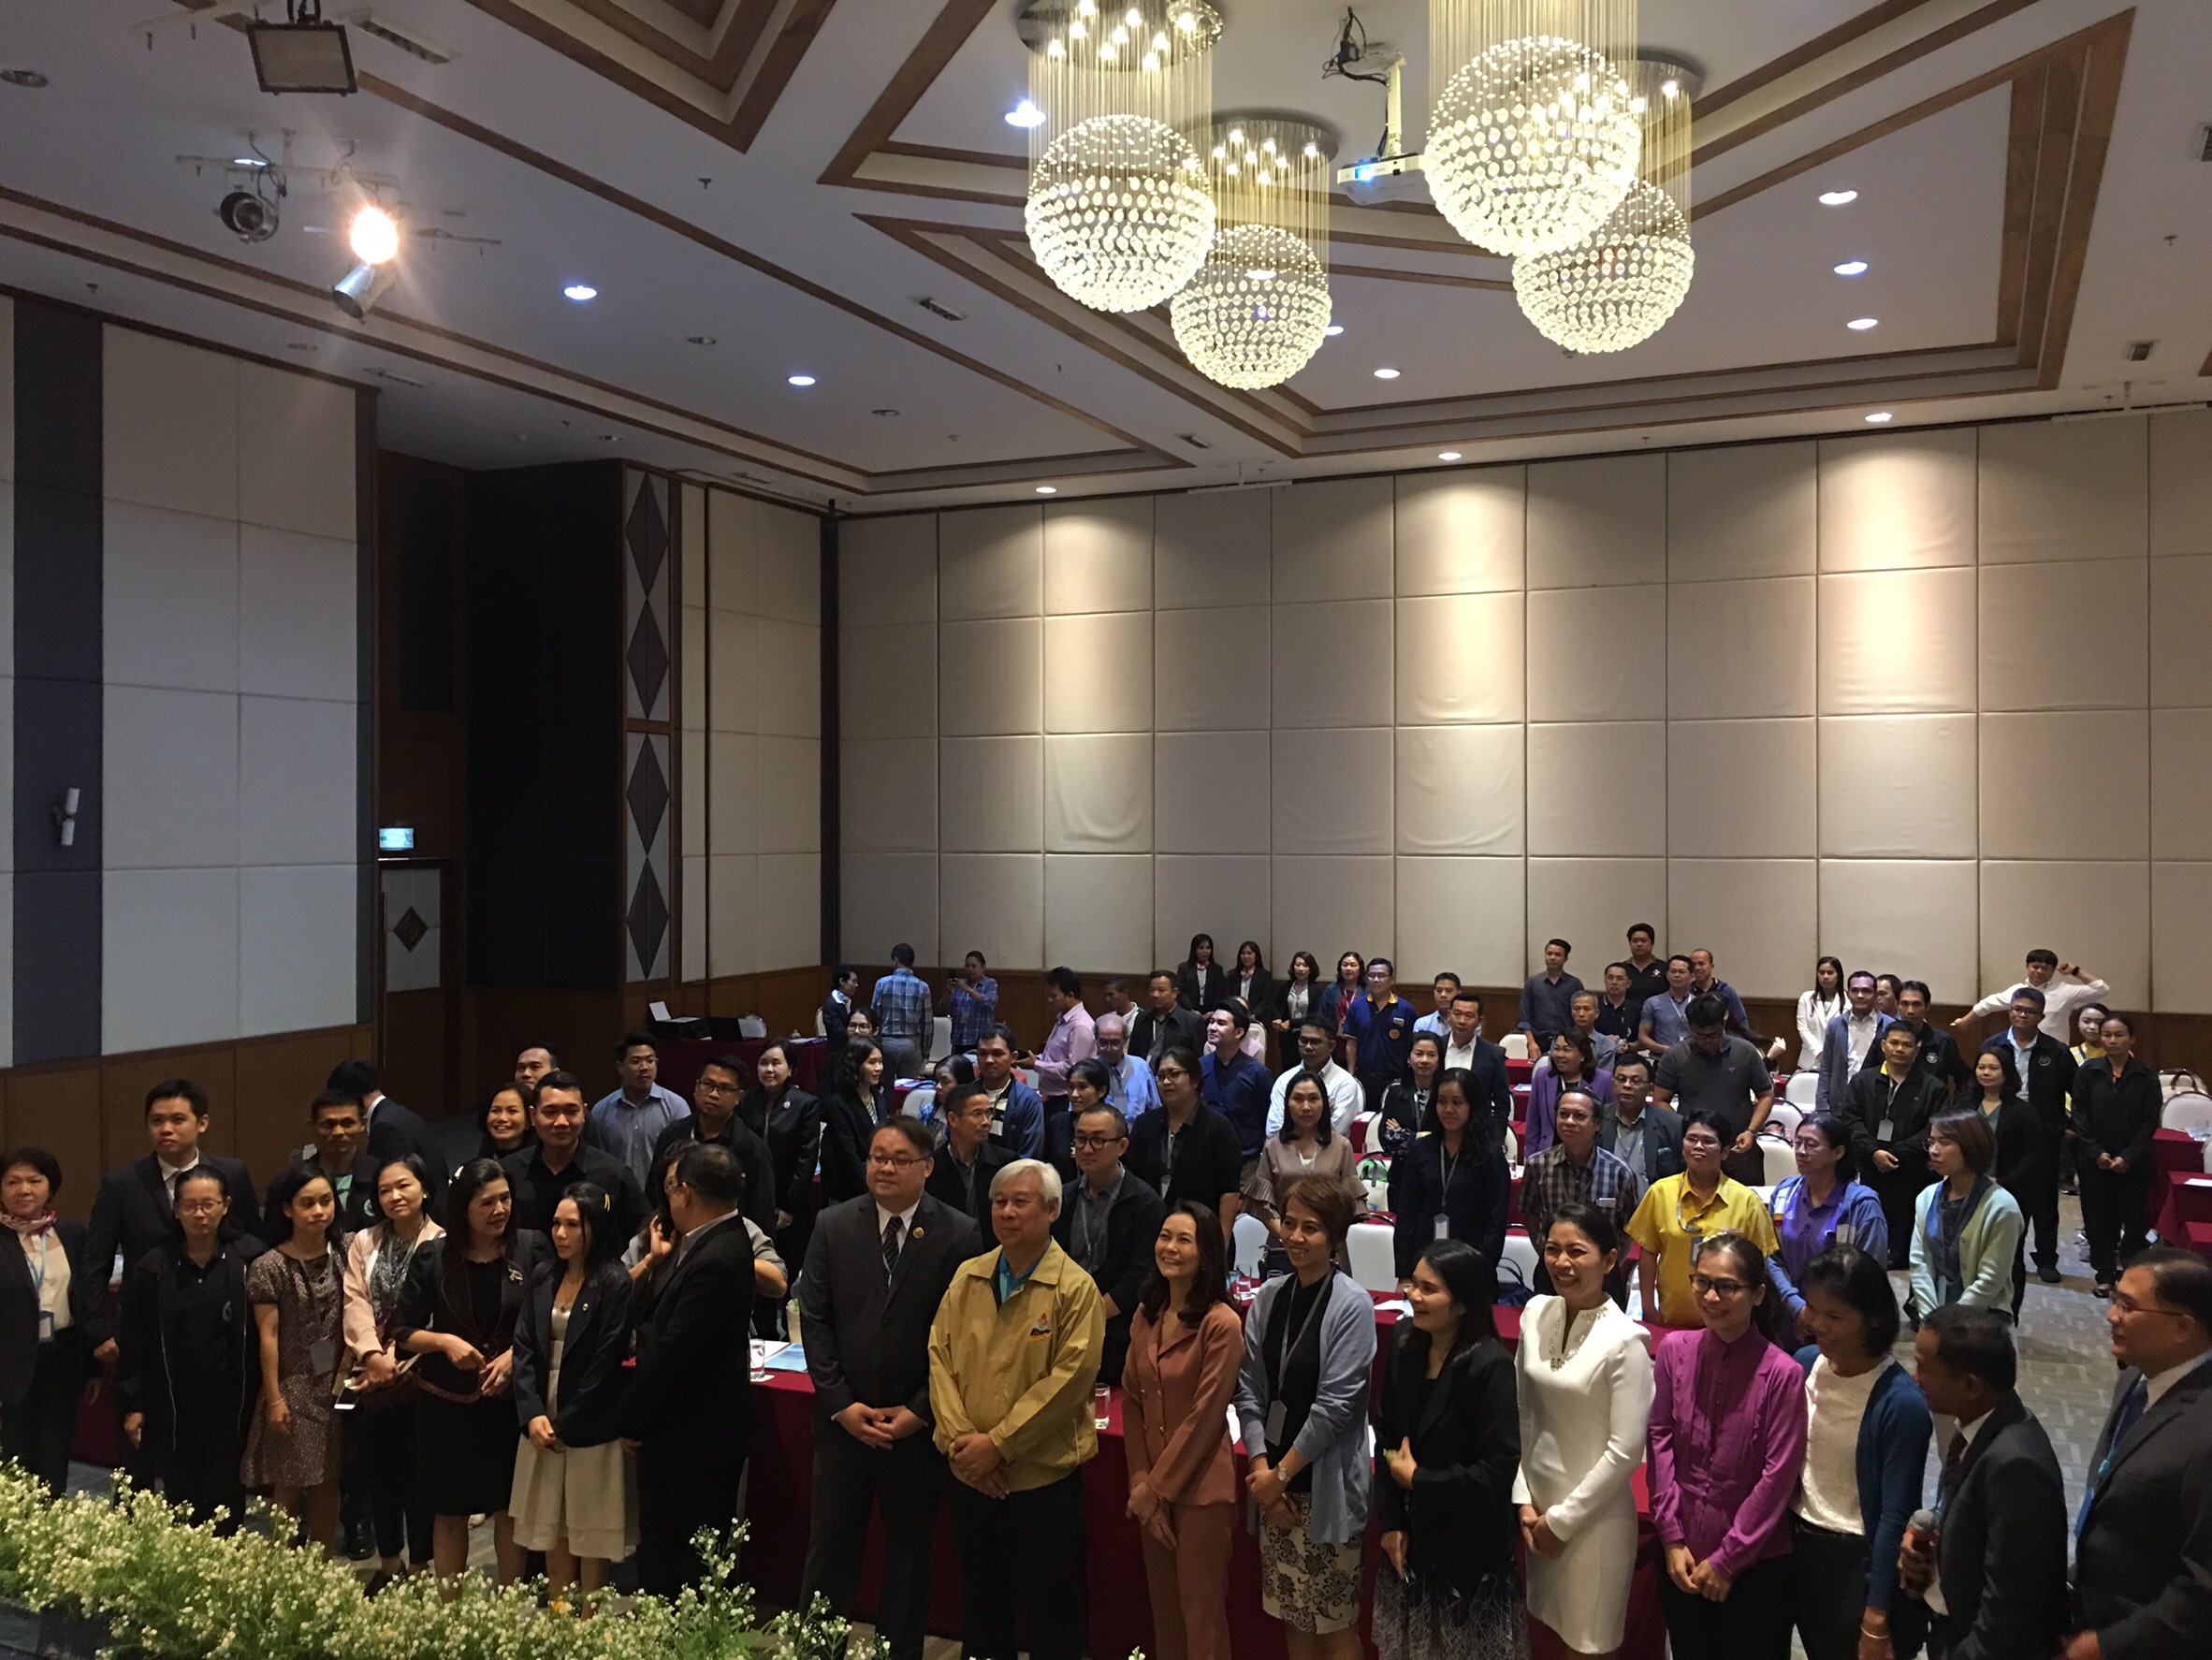 ประชุมวิชาการร่วมกับรังสีการแพทย์แห่งประเทศไทย ครั้งที่17 27-29 พ.ย. - พร้อมเข้าเยี่ยมและให้กำลังใจหน่วยงานรังสีวิทยาในพื้นที่จังหวัดอุบลราชธานีระหว่างวันที่ 25-26 พฤศจิกายน 2562 17